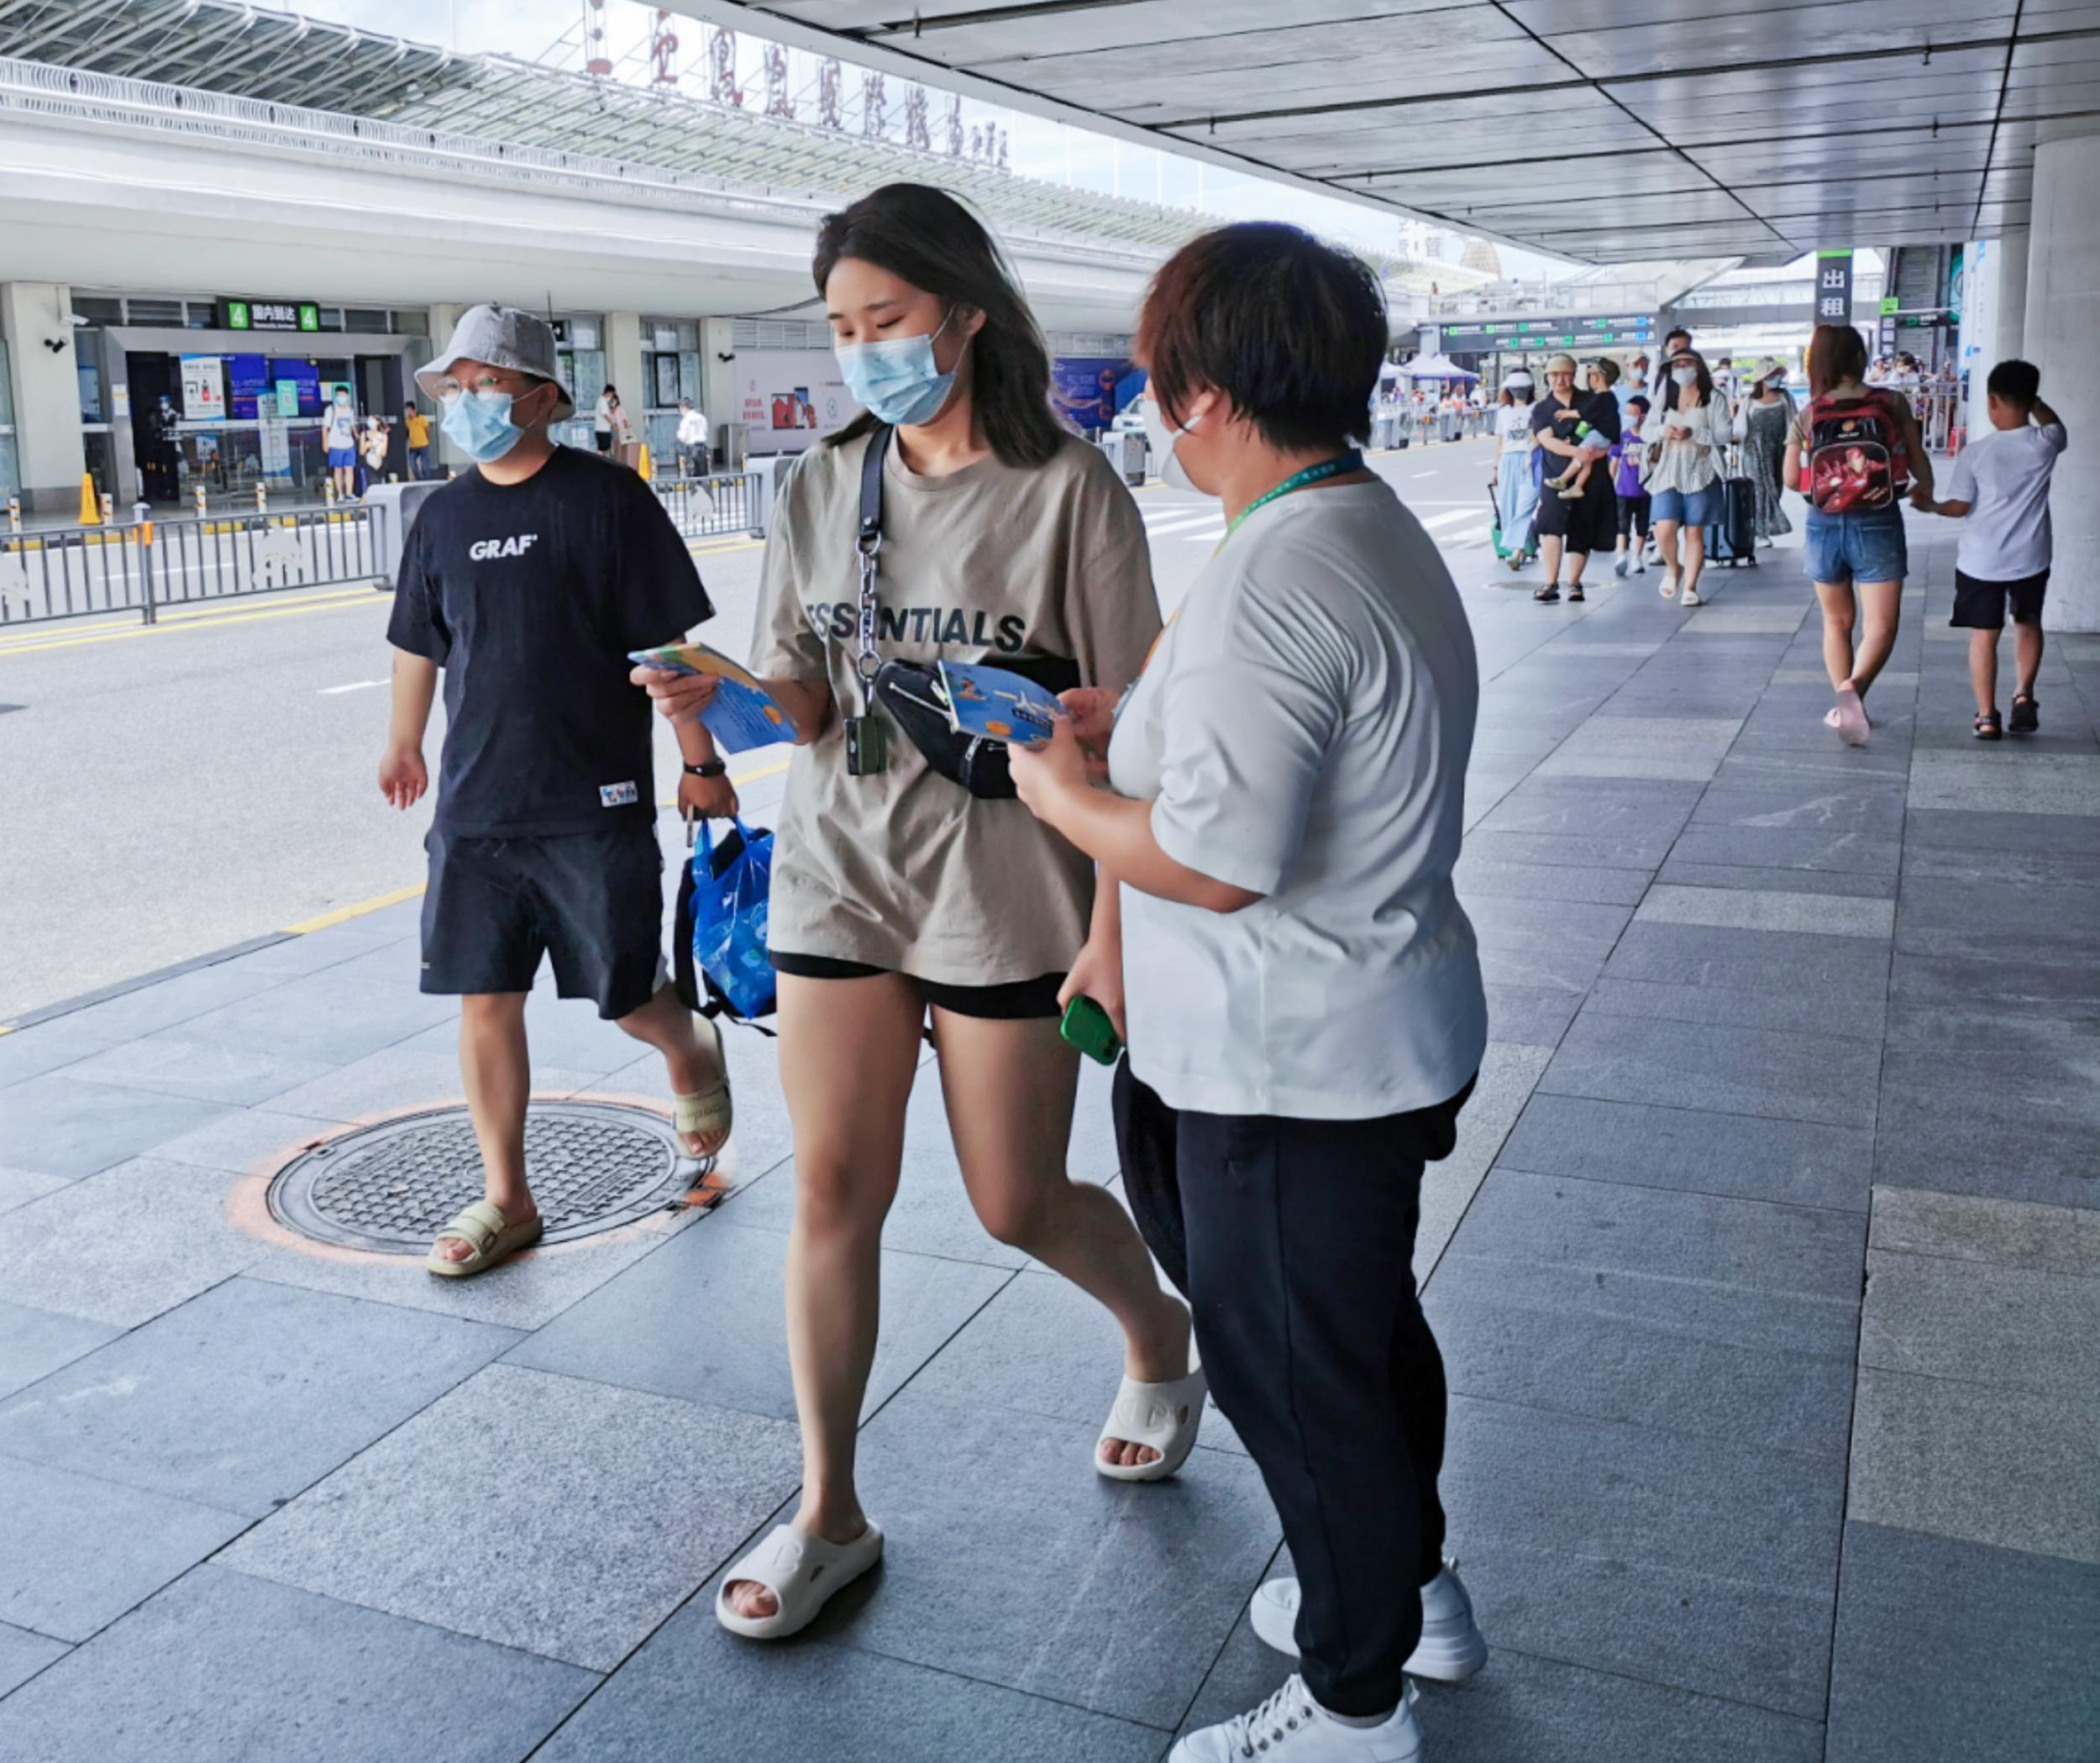 三亚正式投放《一人一本惠惠游》宣传册 市民游客可免费领取